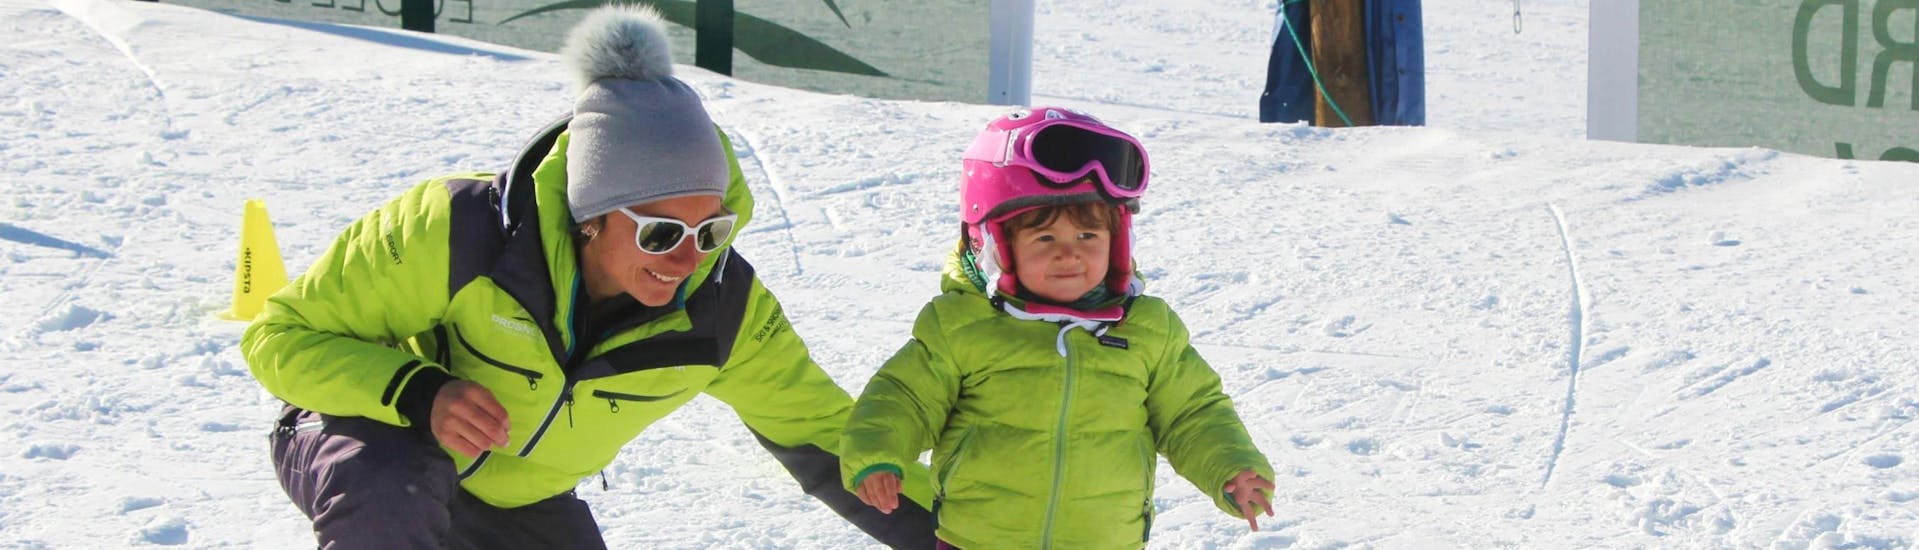 Clases de esquí para niños "Petit Ours" (3-4 años).